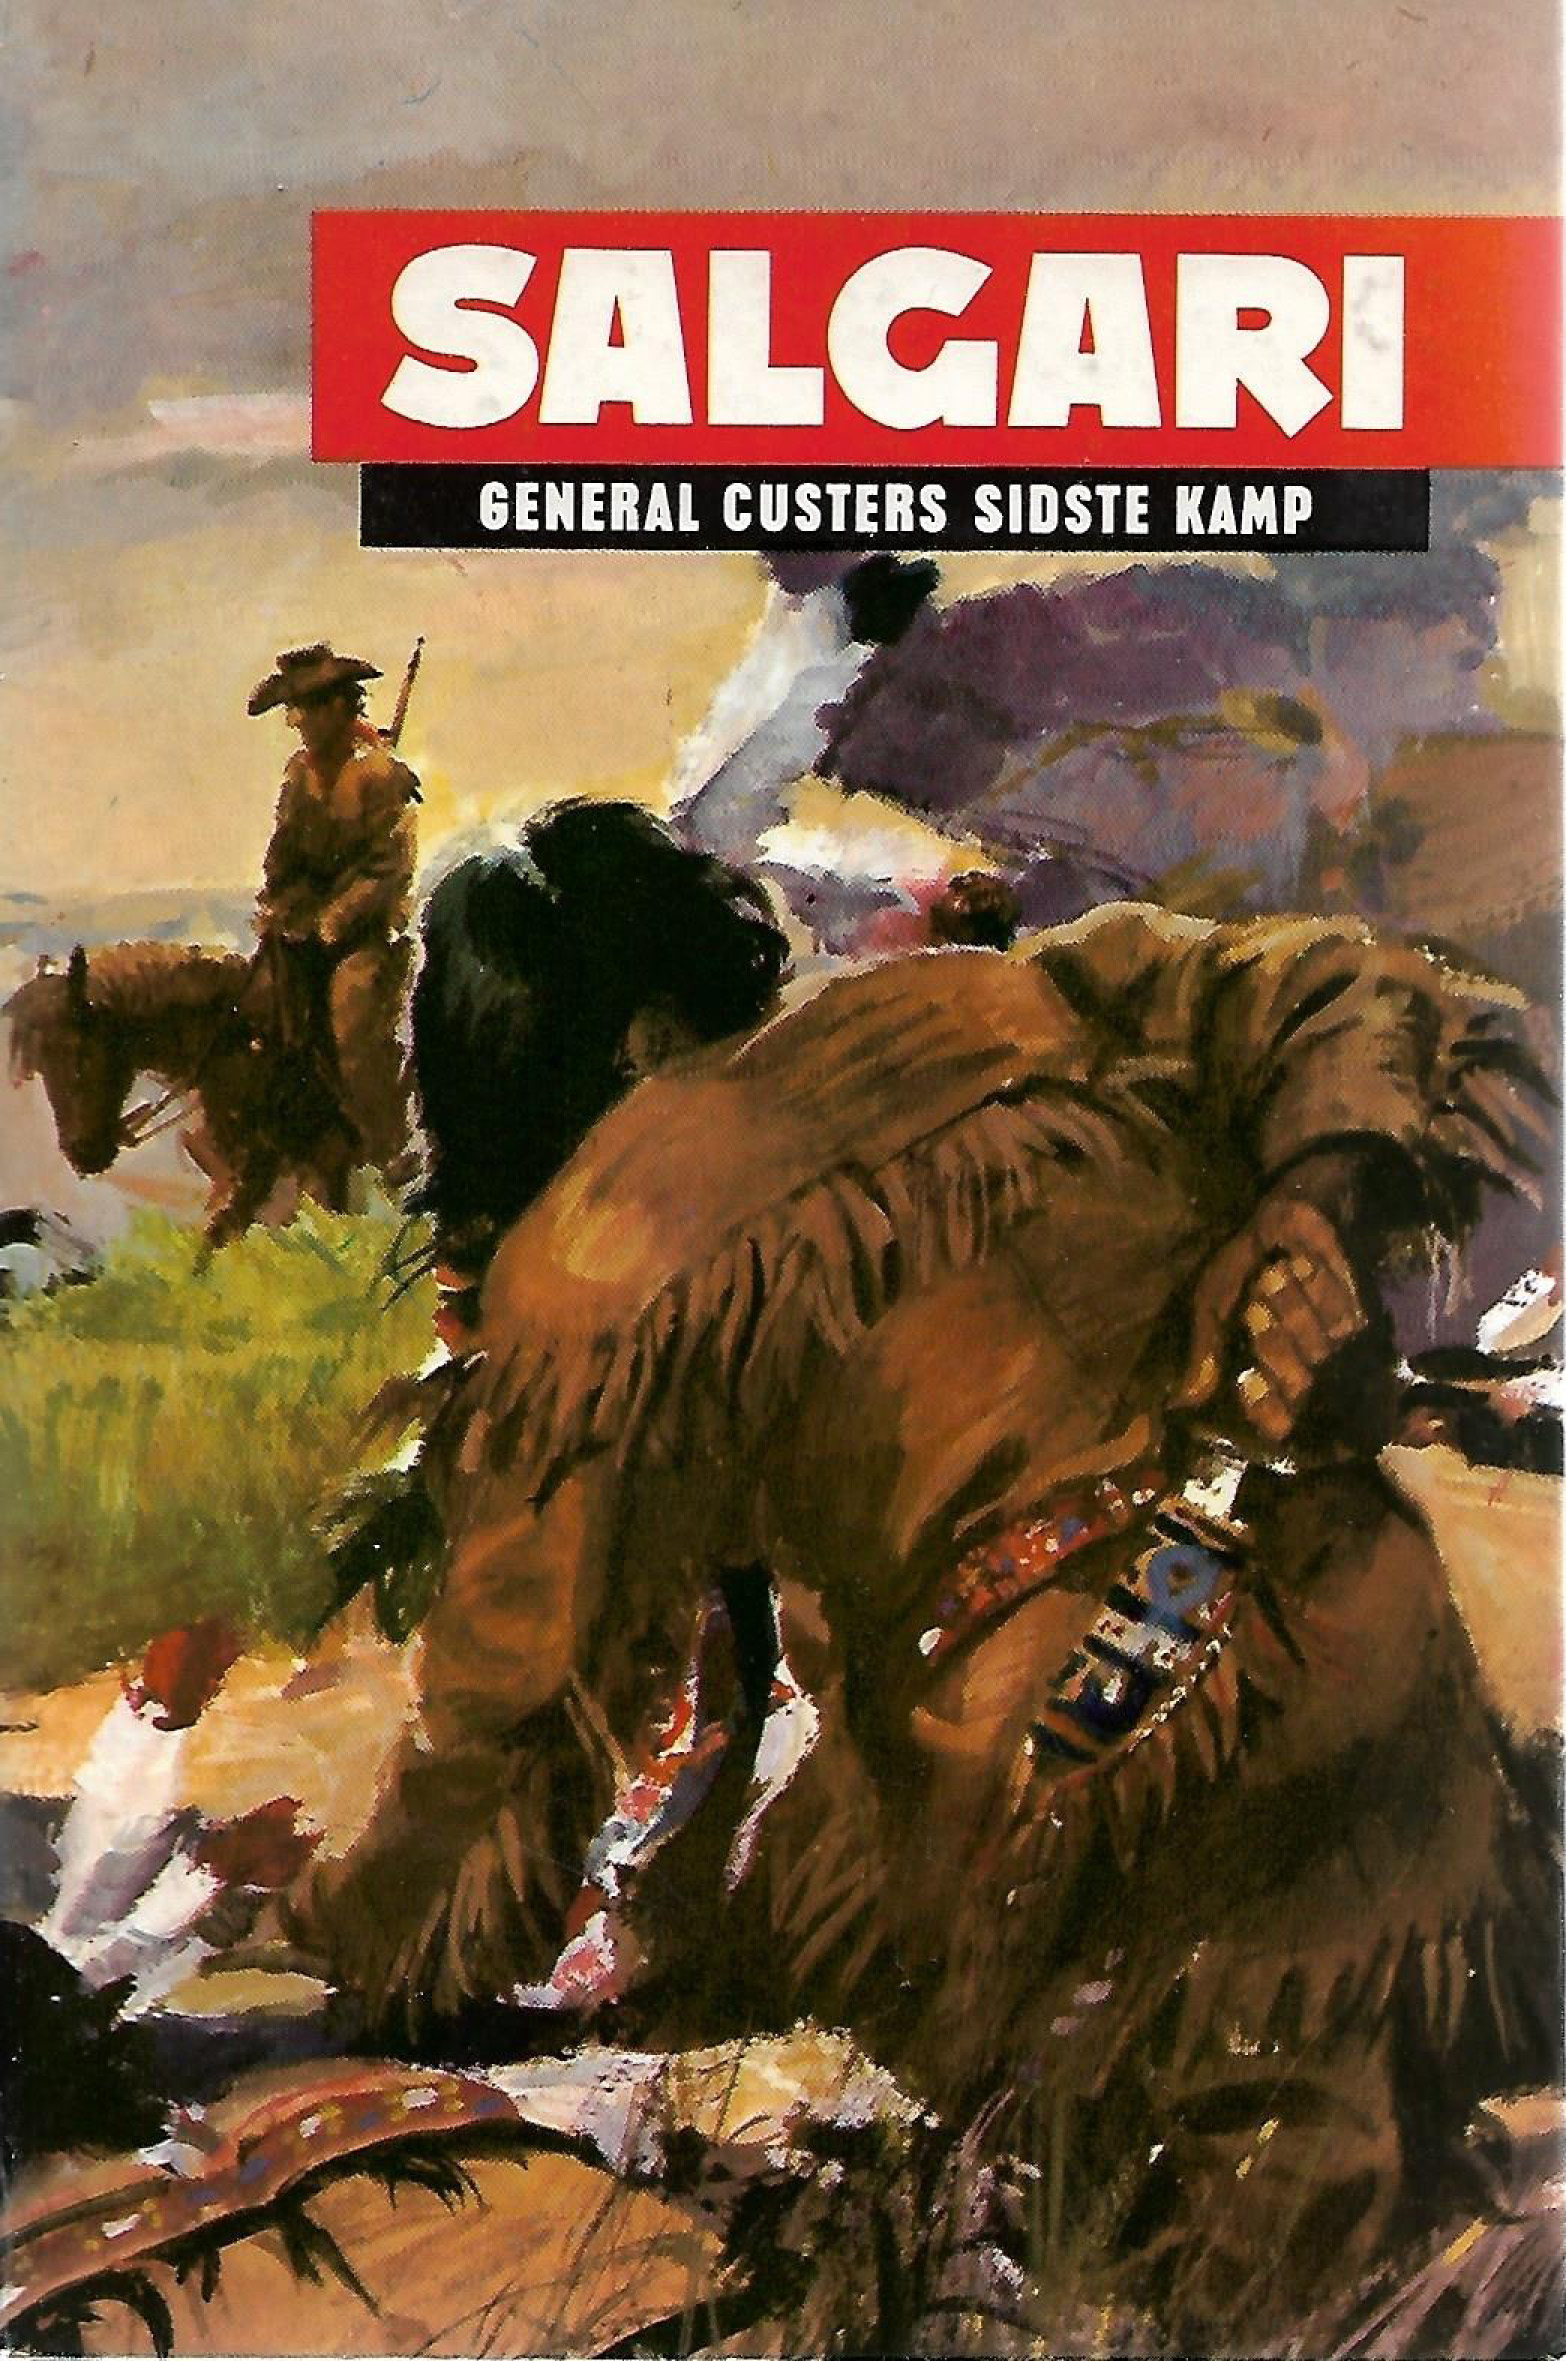 General Custers sidste kamp - Salgari-1